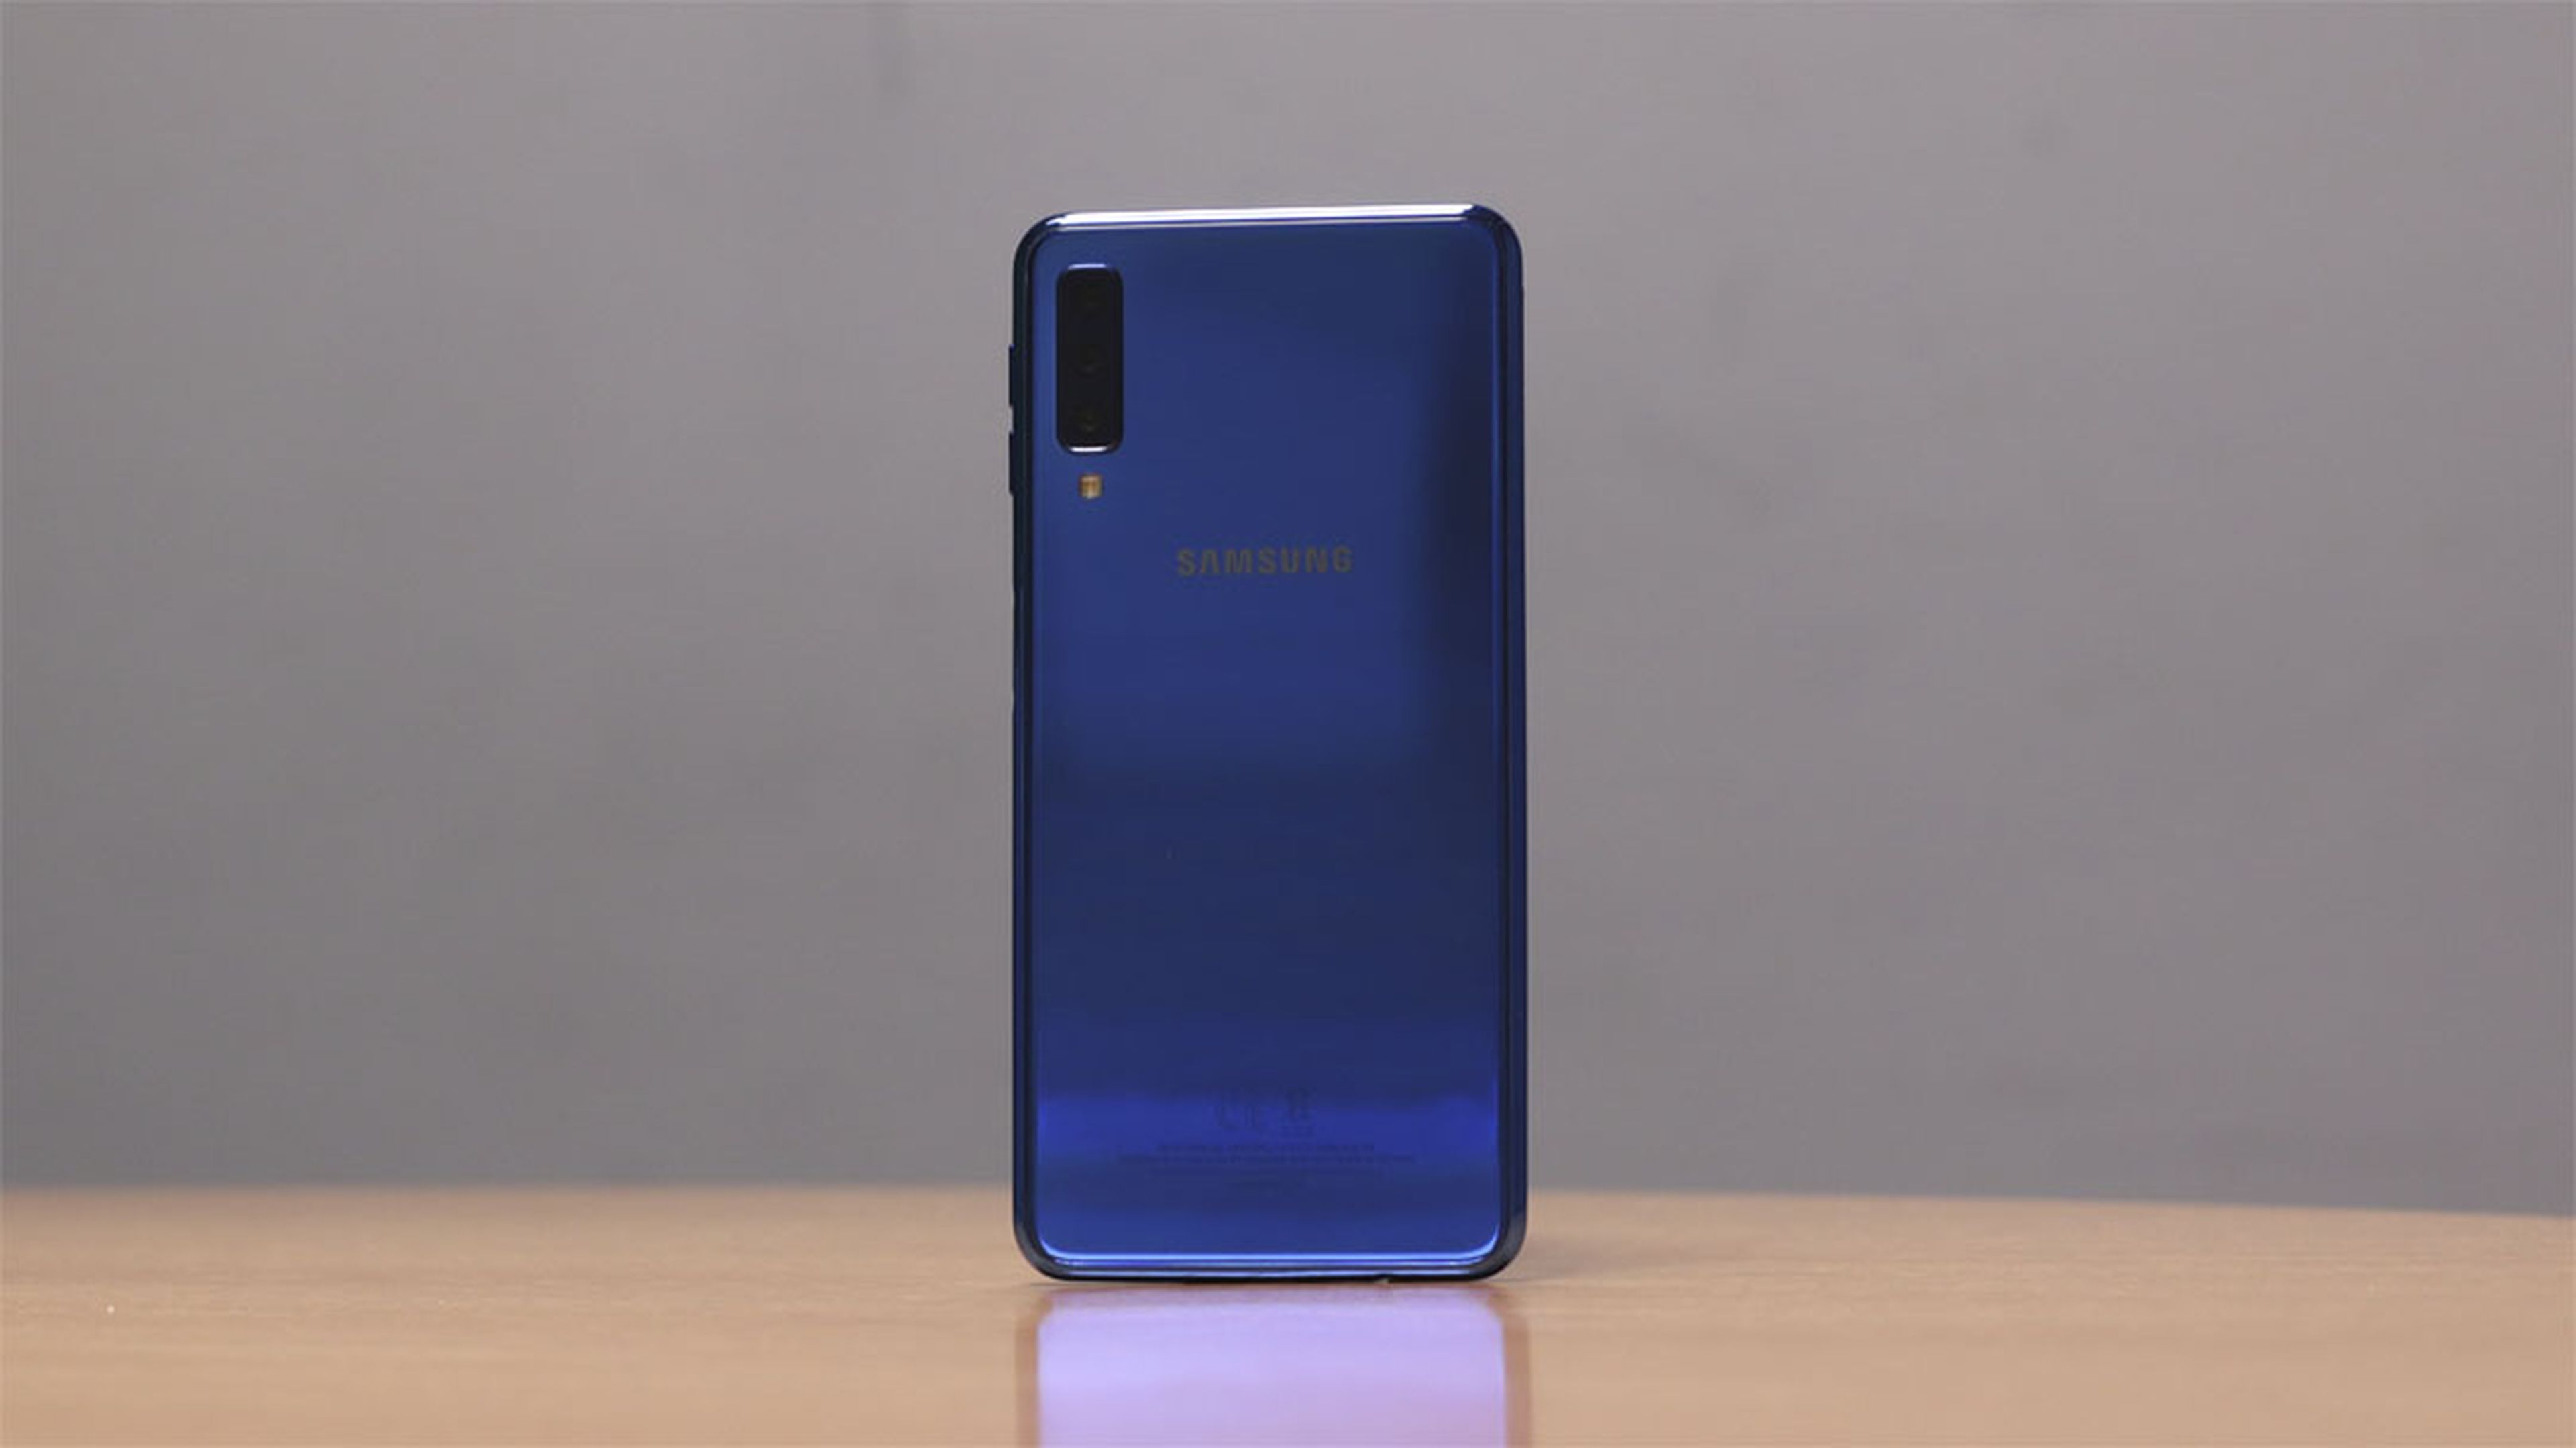 Opiniones tras probar el Samsung Galaxy A7 (2018)